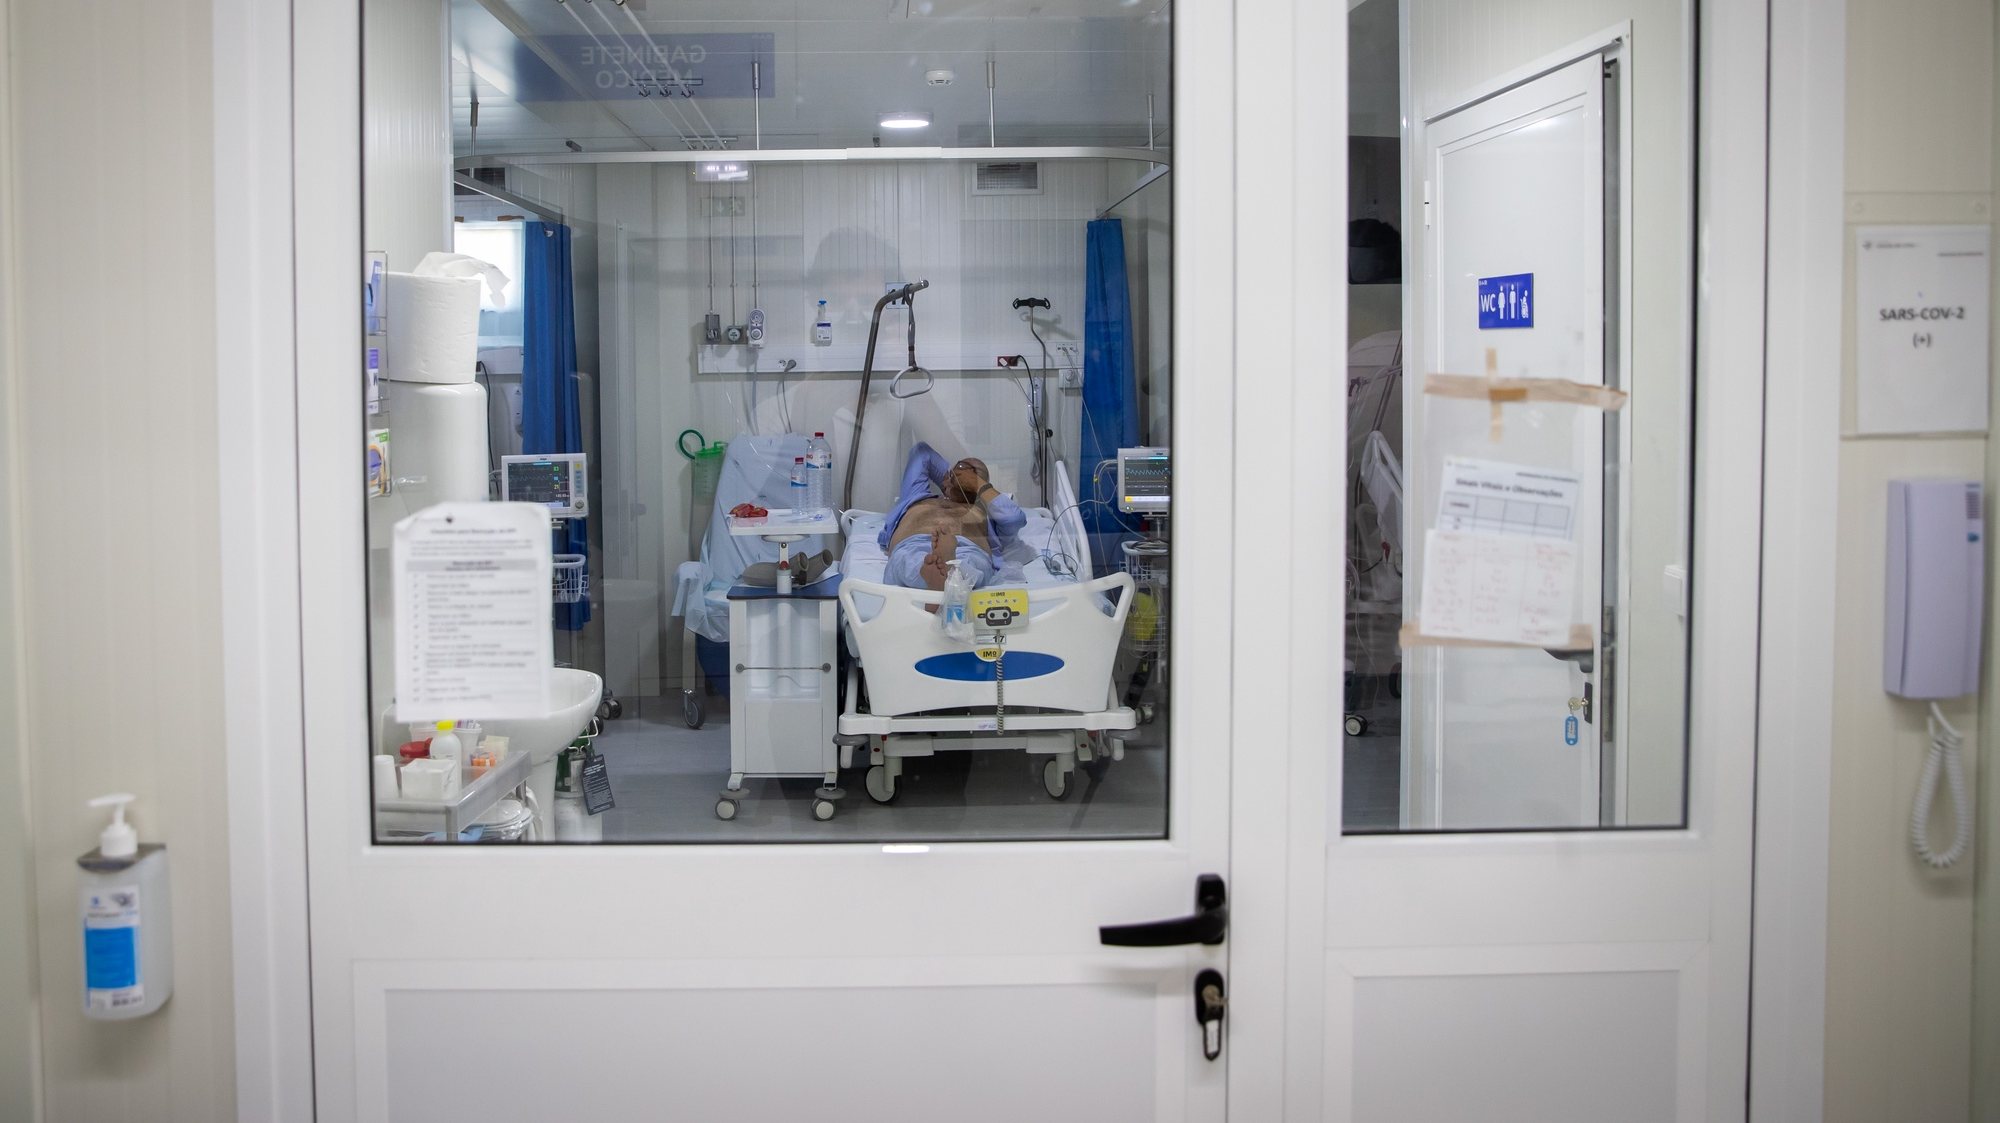 Quarto de pacientes em isolamento devido à Covid19-, na Enfermaria de isolamento do Hospital Garcia de Orta, em Almada, 21 de julho de 2021. JOSÉ SENA GOULÃO/LUSA (ACOMPANHA TEXTO DE 24/07/2021)